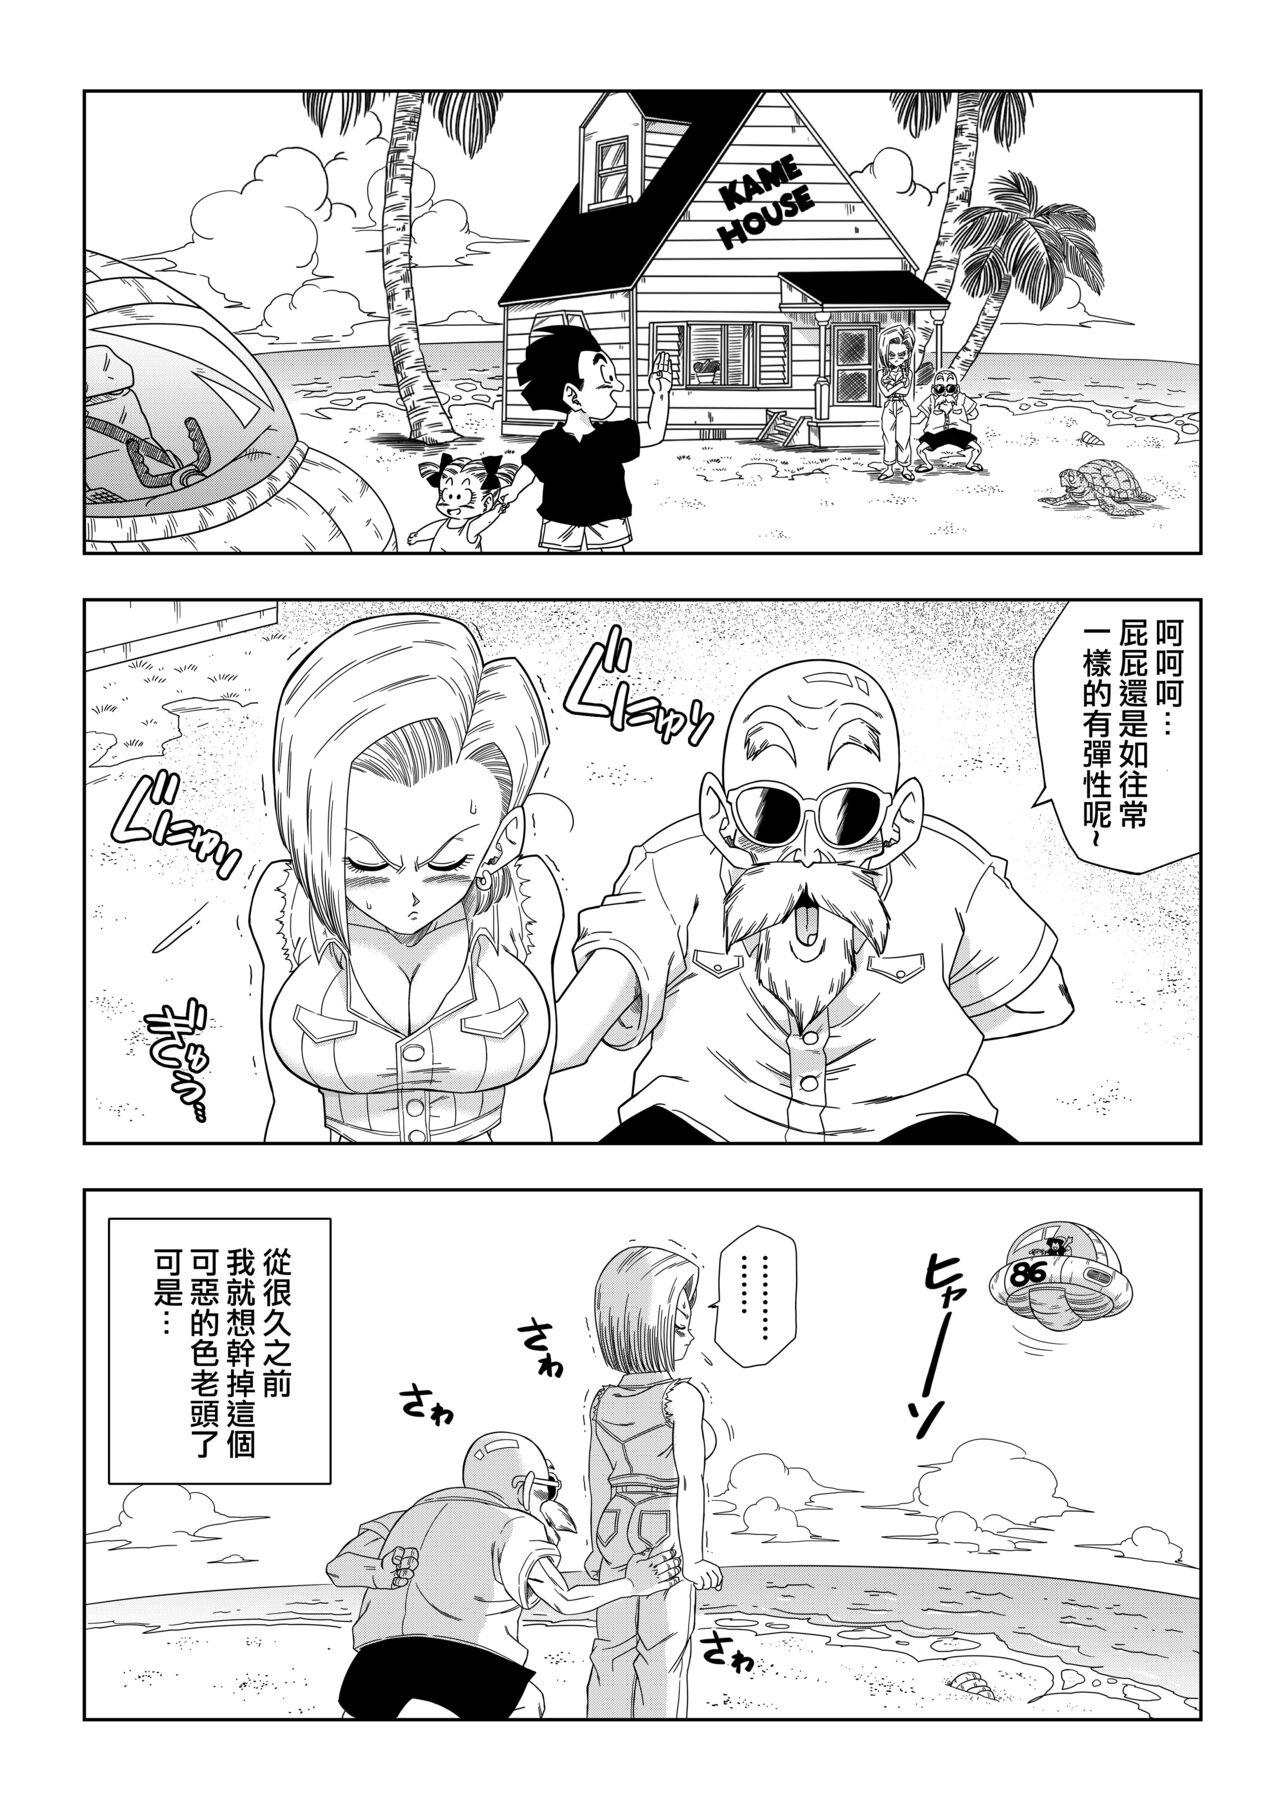 Submissive 18-gou vs Kame Sennin - Dragon ball z Toilet - Page 2